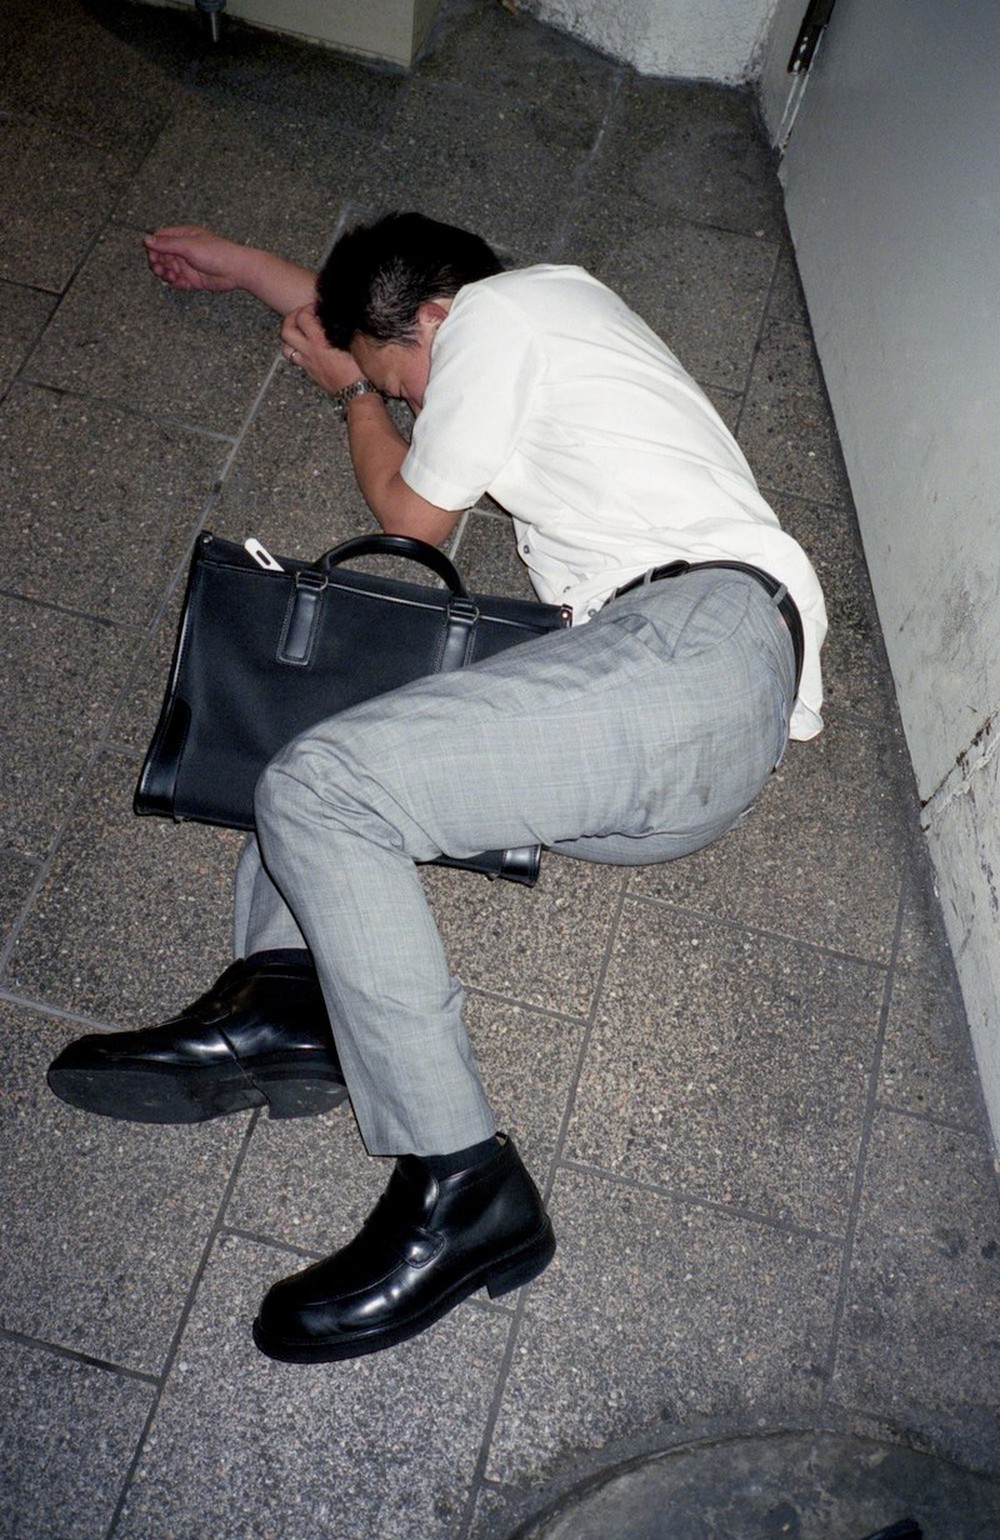 Làm việc 60 giờ một tuần thì như thế nào? Bộ ảnh chứng minh sự kiệt sức của dân văn phòng Nhật Bản - Ảnh 5.